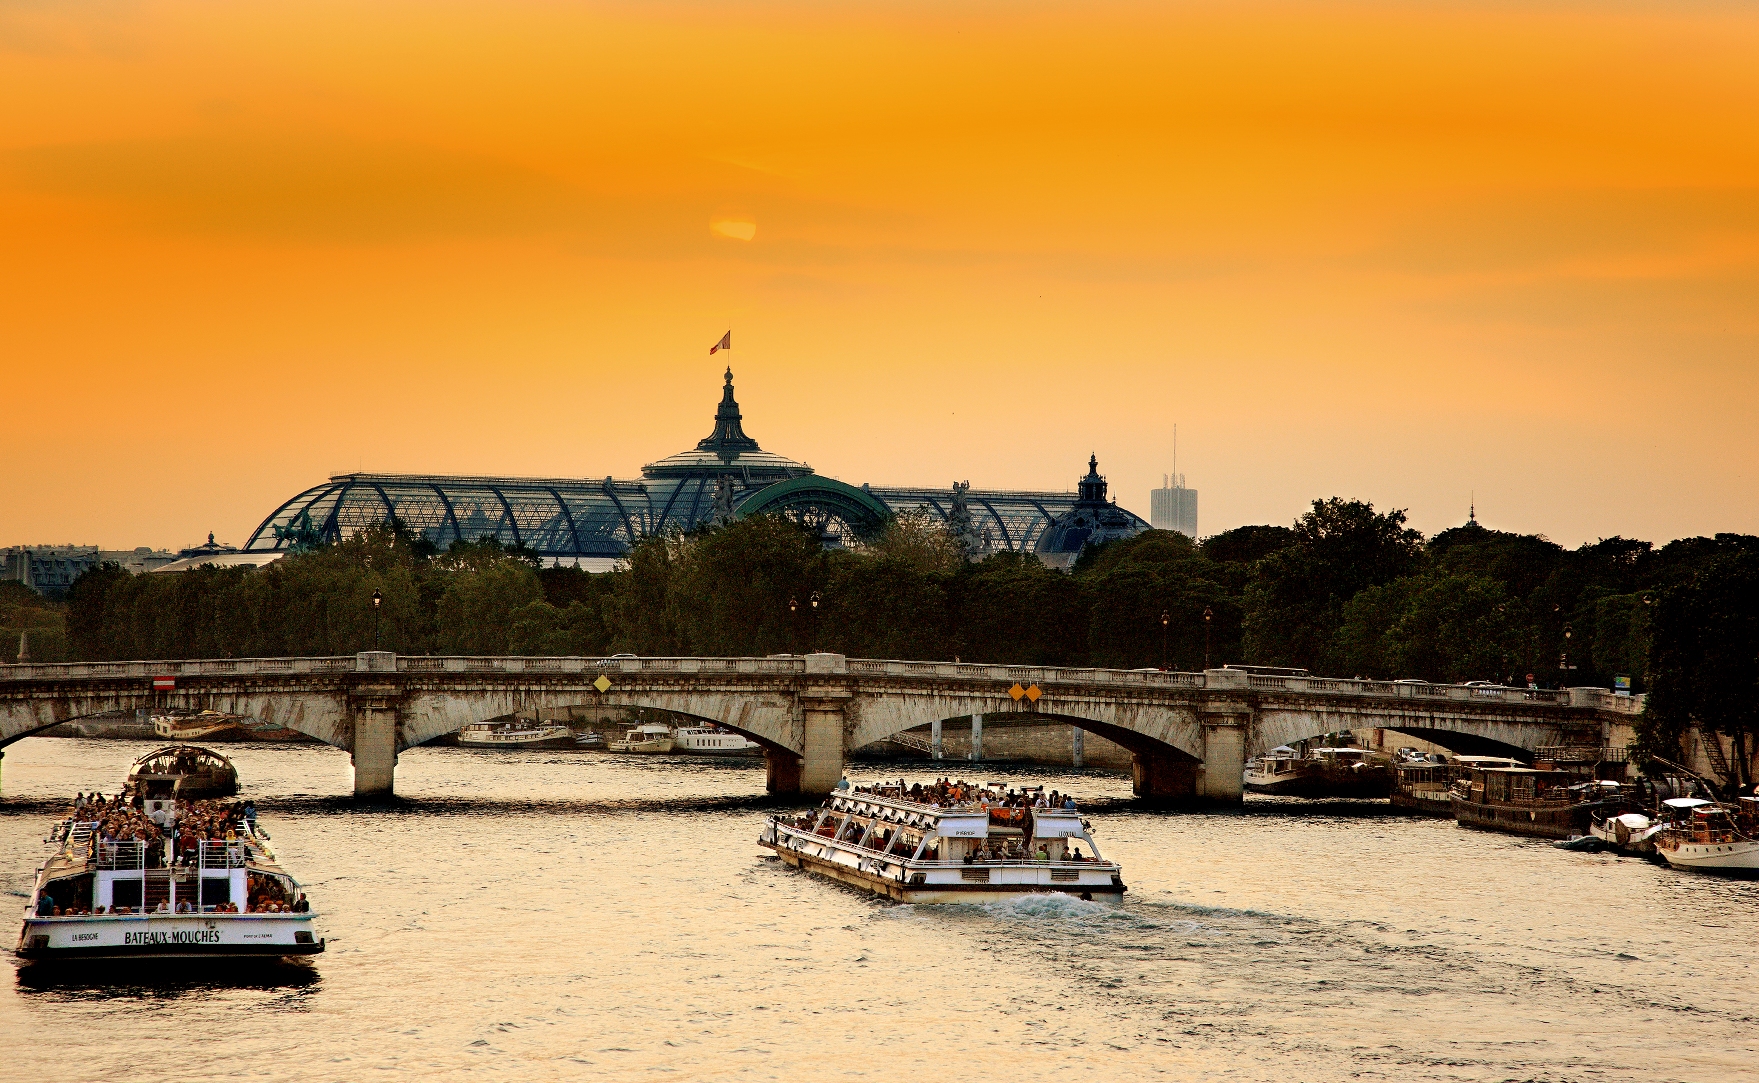 Les compagnies de croisières fluviales veulent être intégrées à l'organisation des JO à Paris en 2024. - Bateaux Mouches